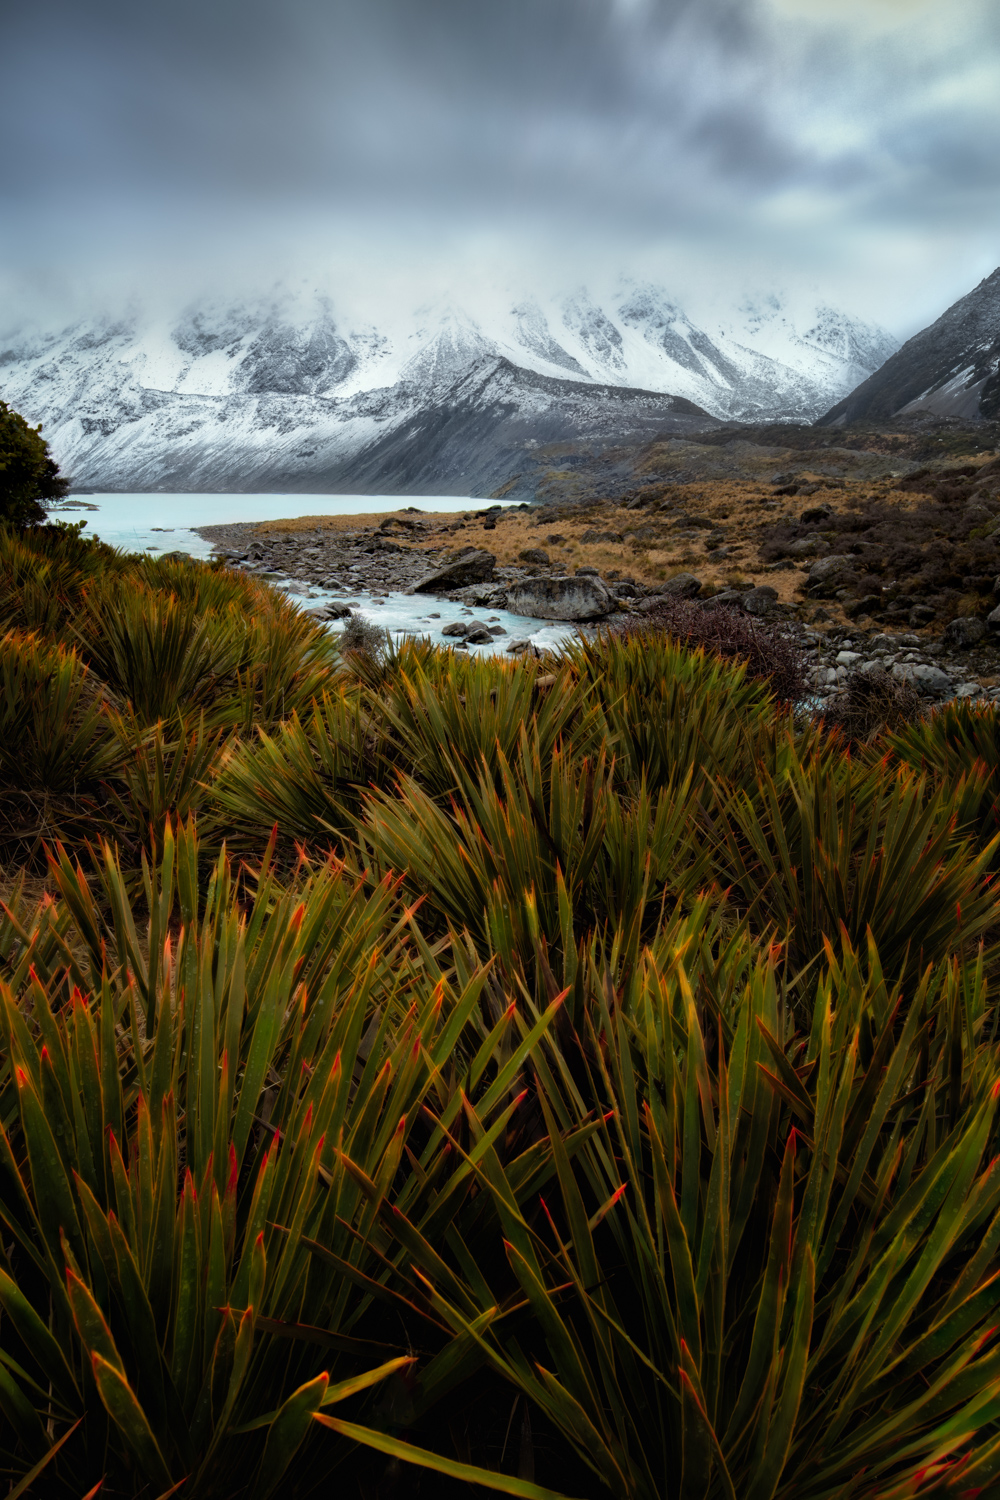 Landscape Photography Workshop Tours - Mt Cook, Hooker Valley Track, New Zealand